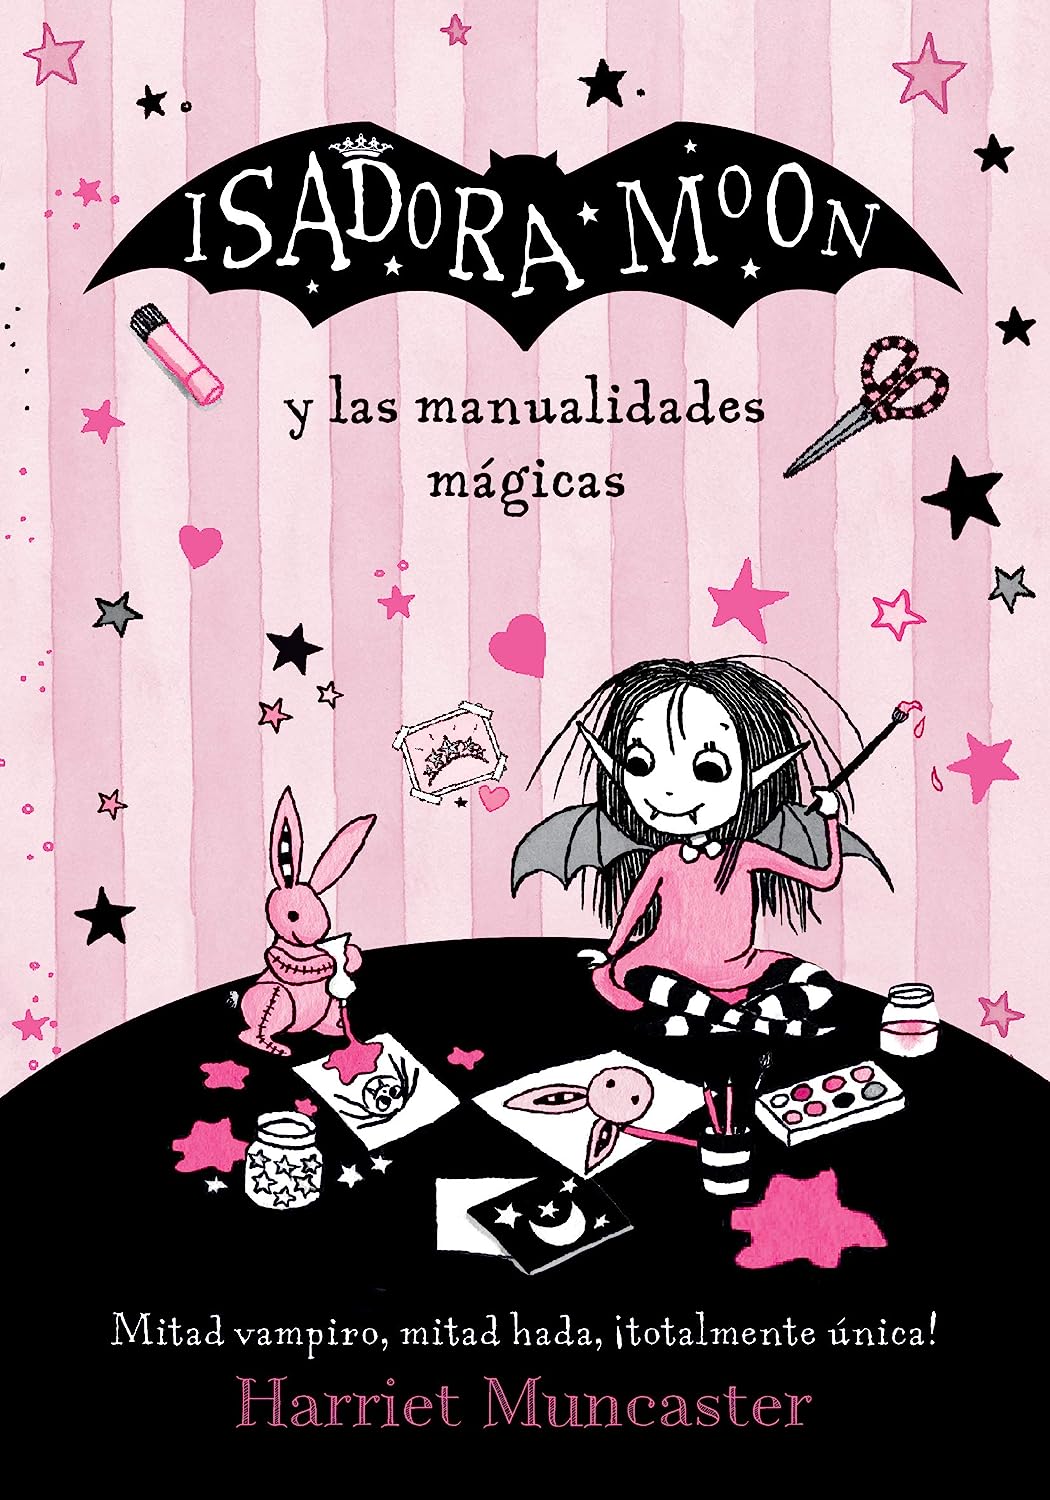 Libro: Isadora Moon y las Manualidades Mágicas - Parte de: Isadora Moon (26 libros) por Harriet Muncaster